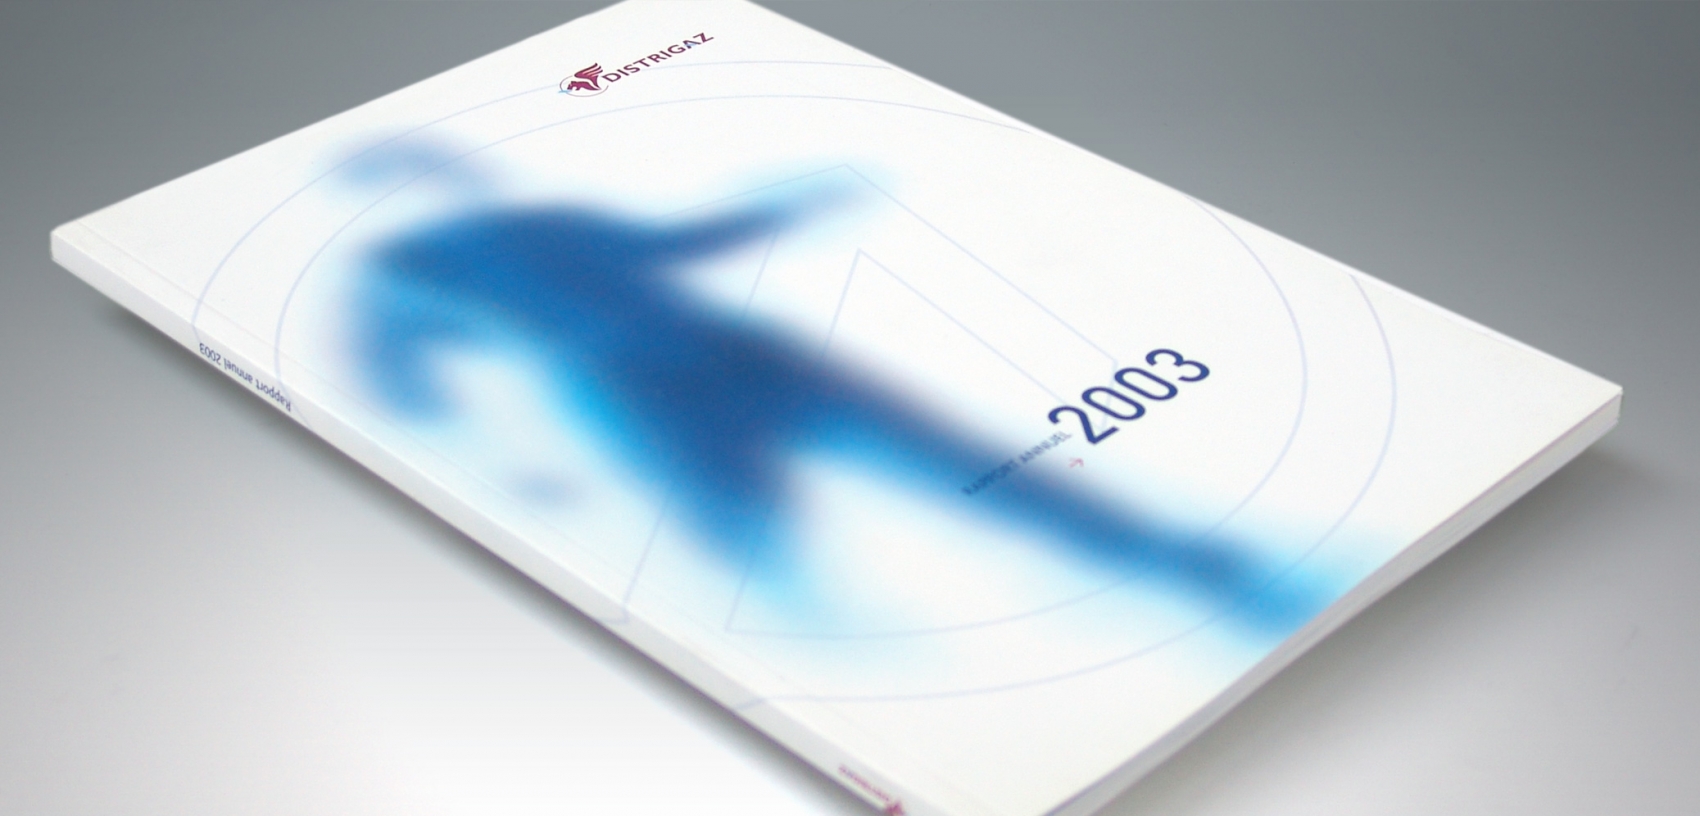 Distrigas - Annual Report 2003